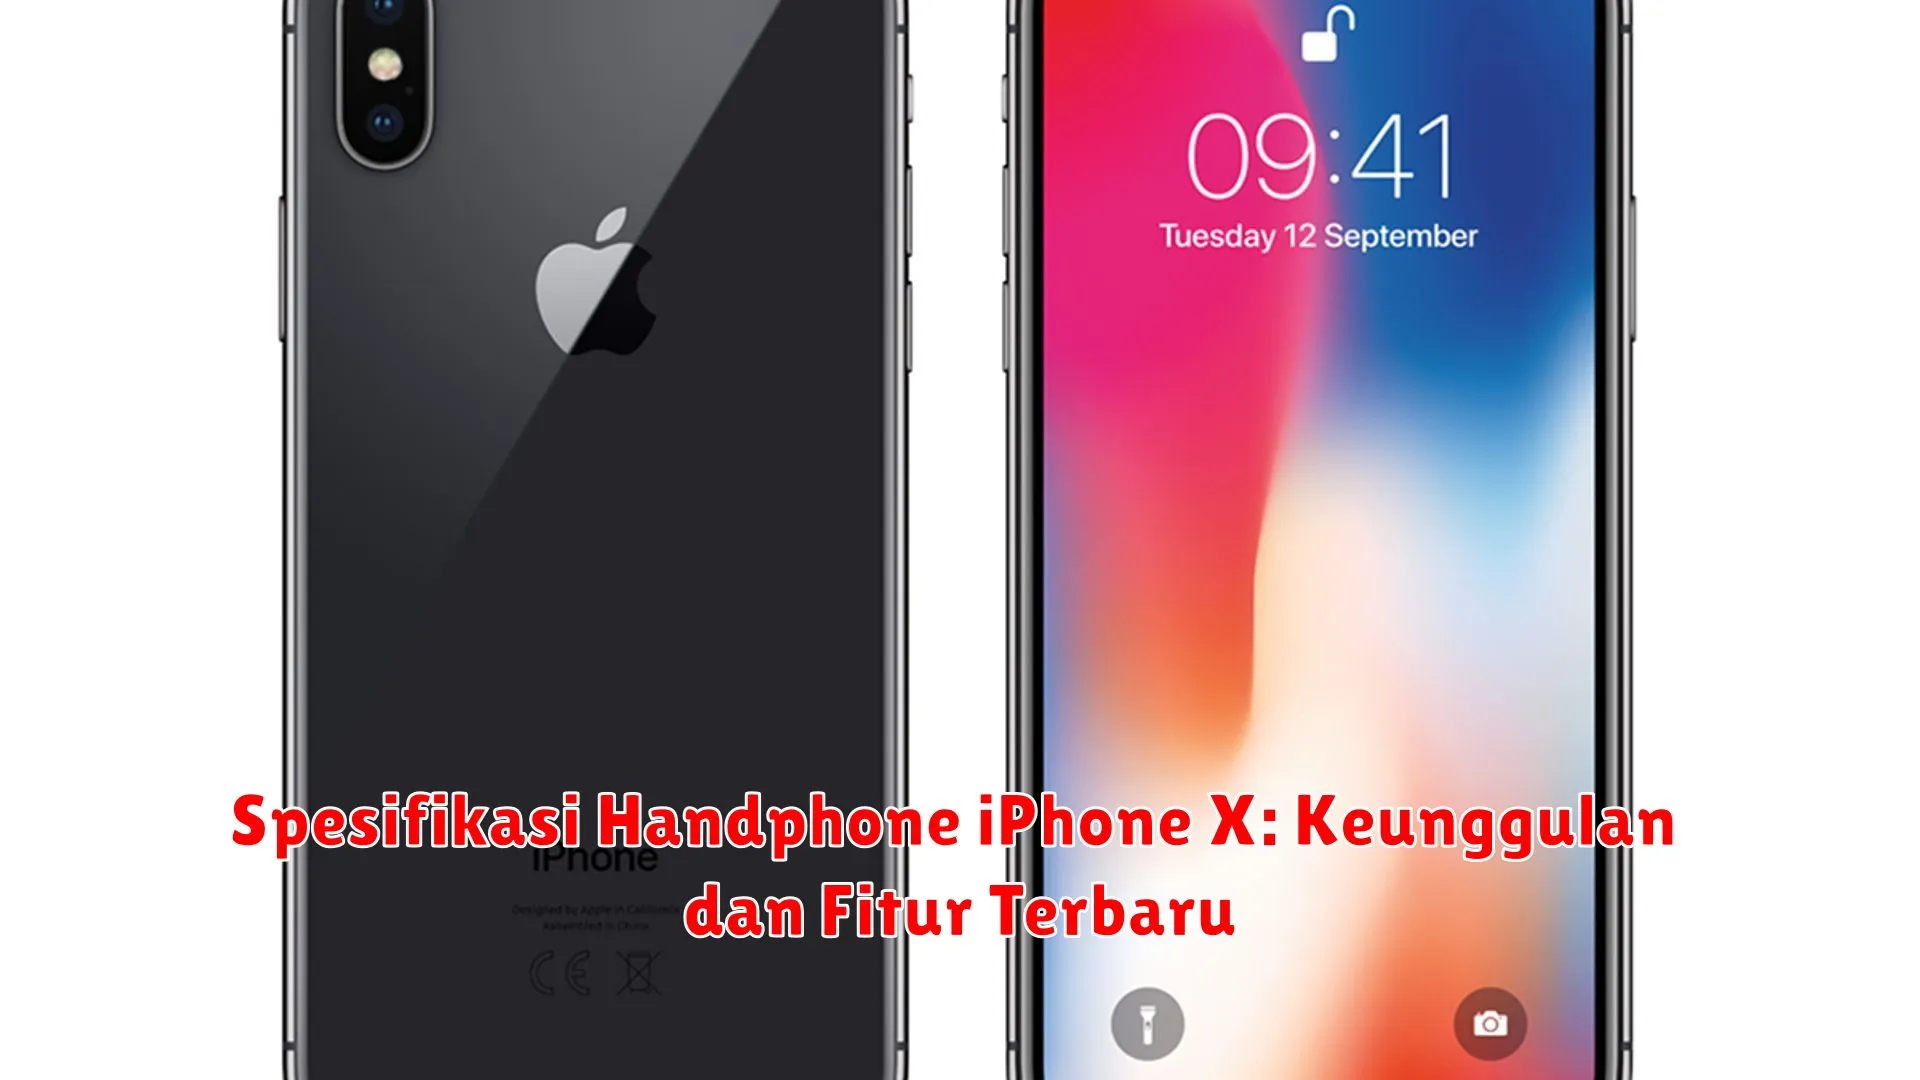 Spesifikasi Handphone iPhone X: Keunggulan dan Fitur Terbaru